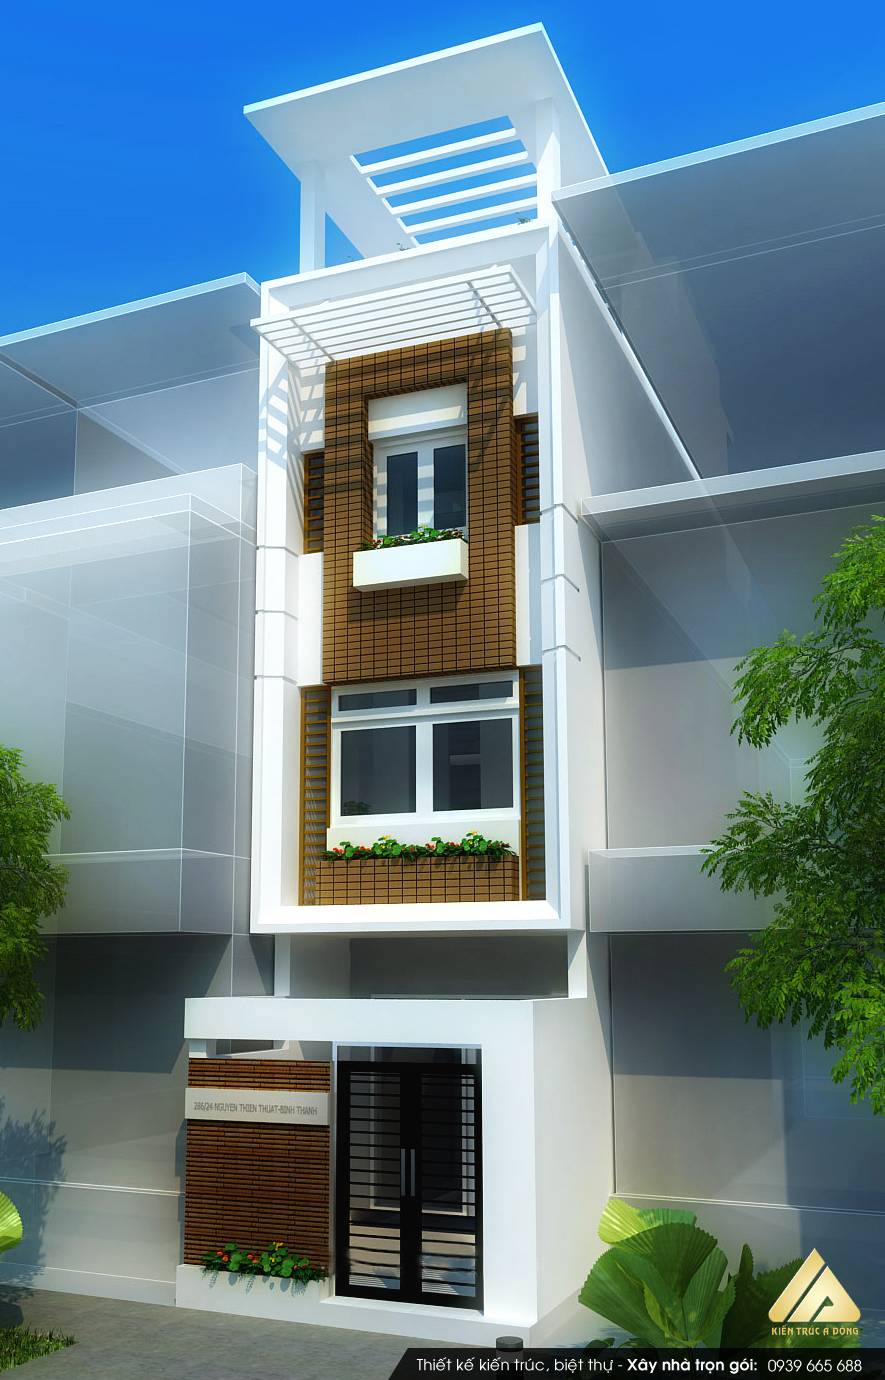 Tuyển chọn các mẫu nhà phố hiện đại đẹp bậc nhất Việt Nam > Thiết kế nhà phố 3 tầng hiện đại, sang trọng